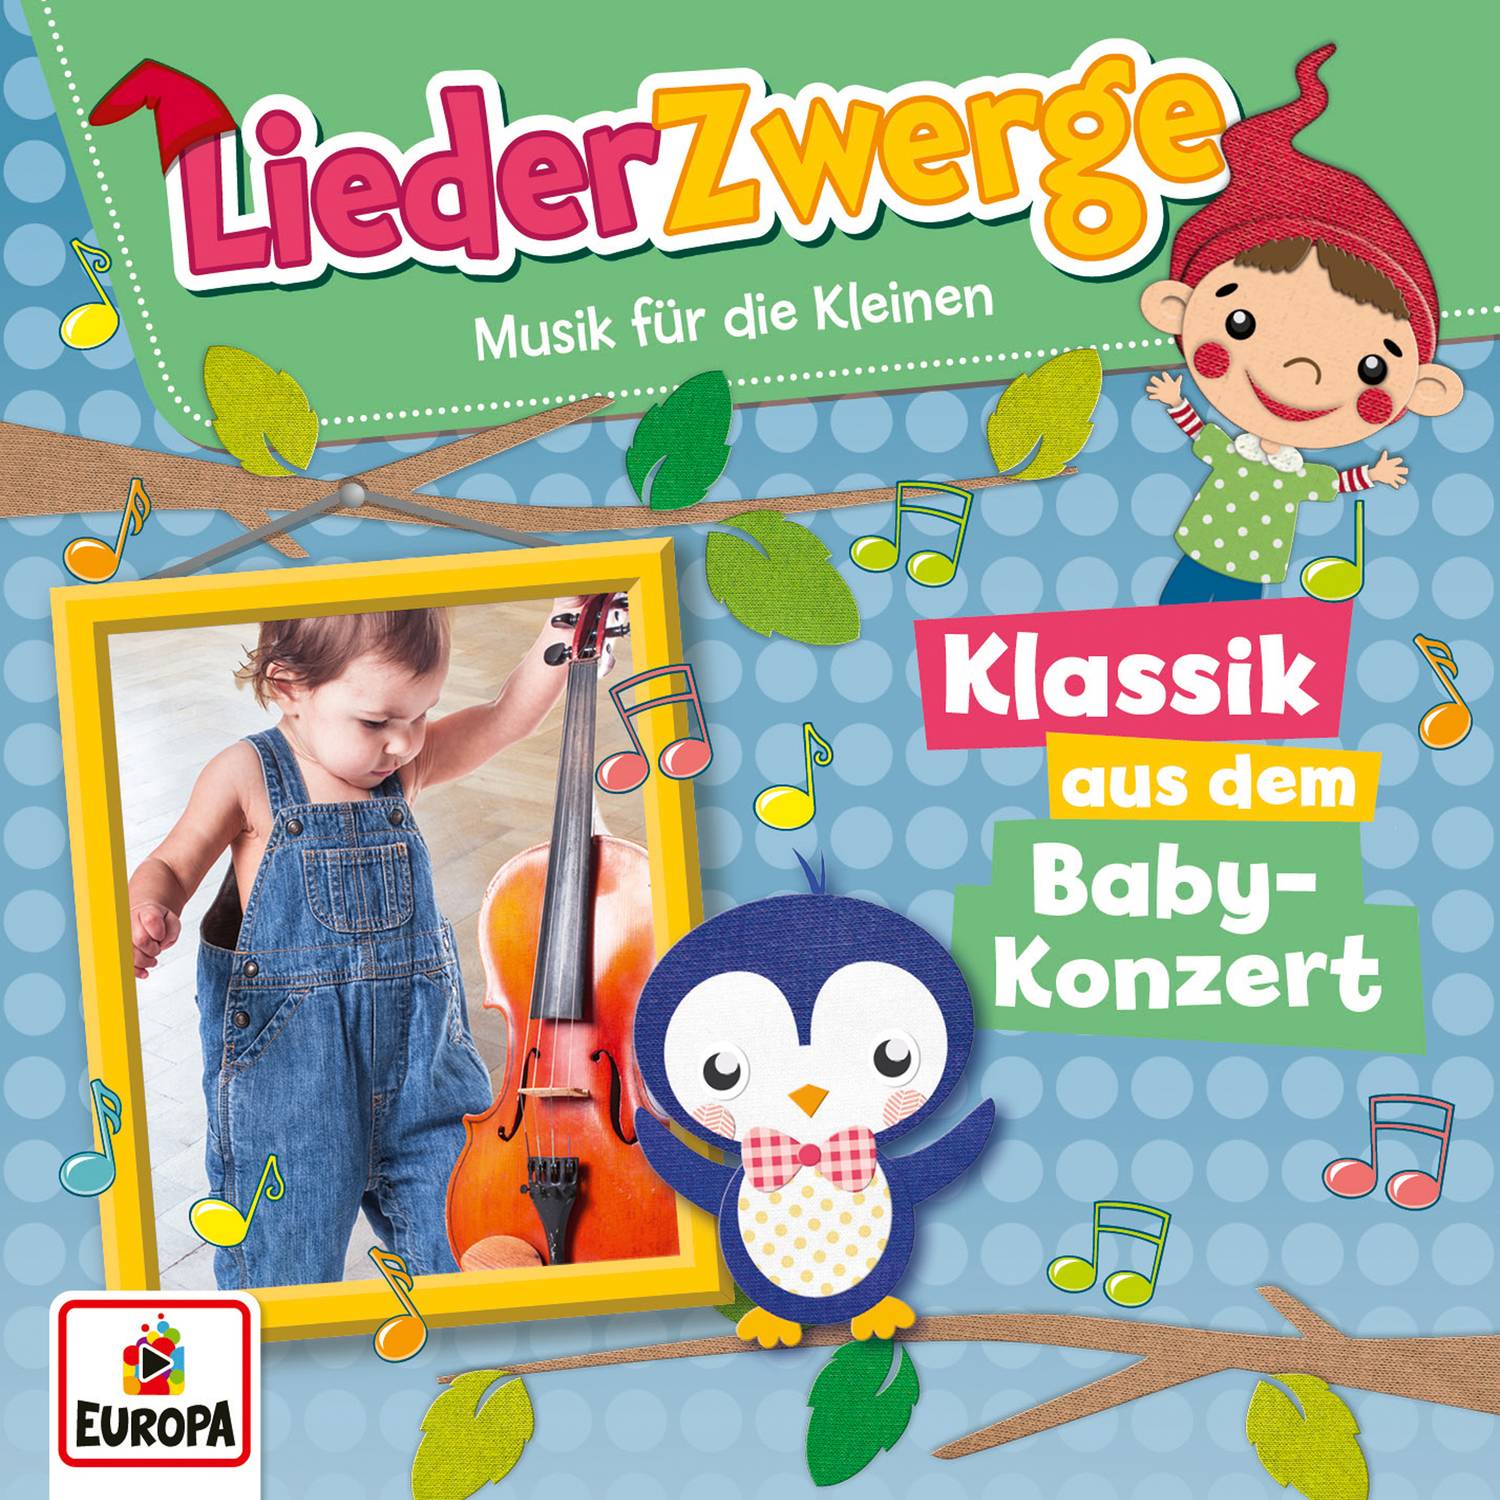 LiederZwerge - Klassik aus dem Babykonzert